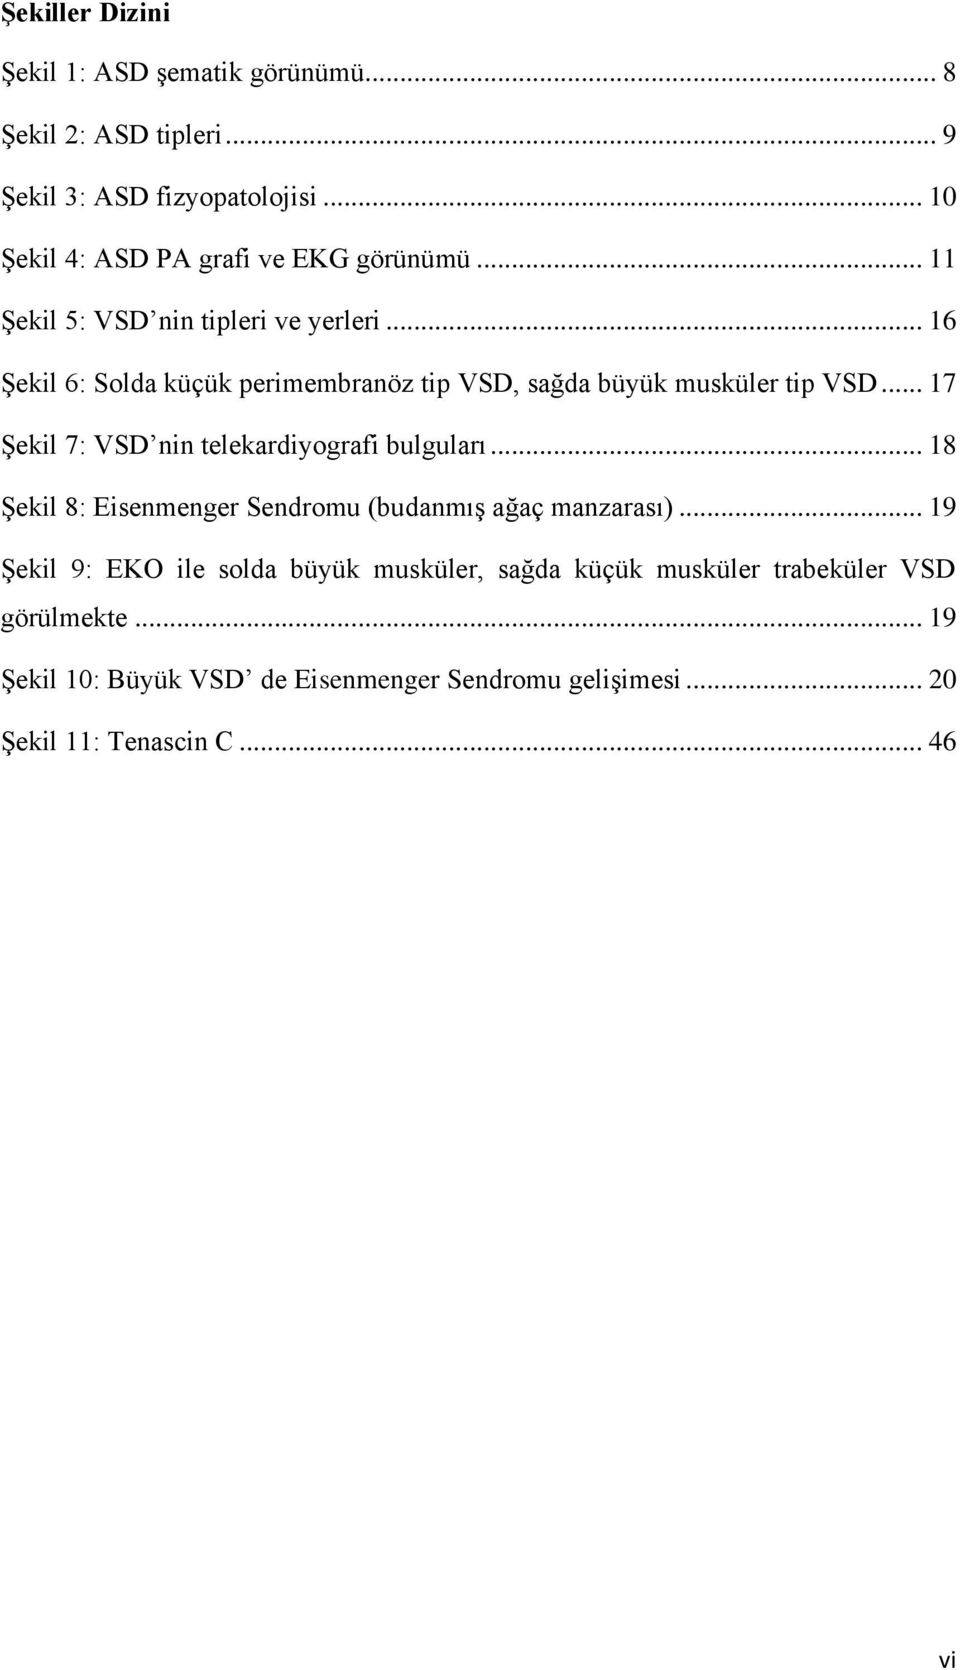 .. 16 ġekil 6: Solda küçük perimembranöz tip VSD, sağda büyük musküler tip VSD... 17 ġekil 7: VSD nin telekardiyografi bulguları.